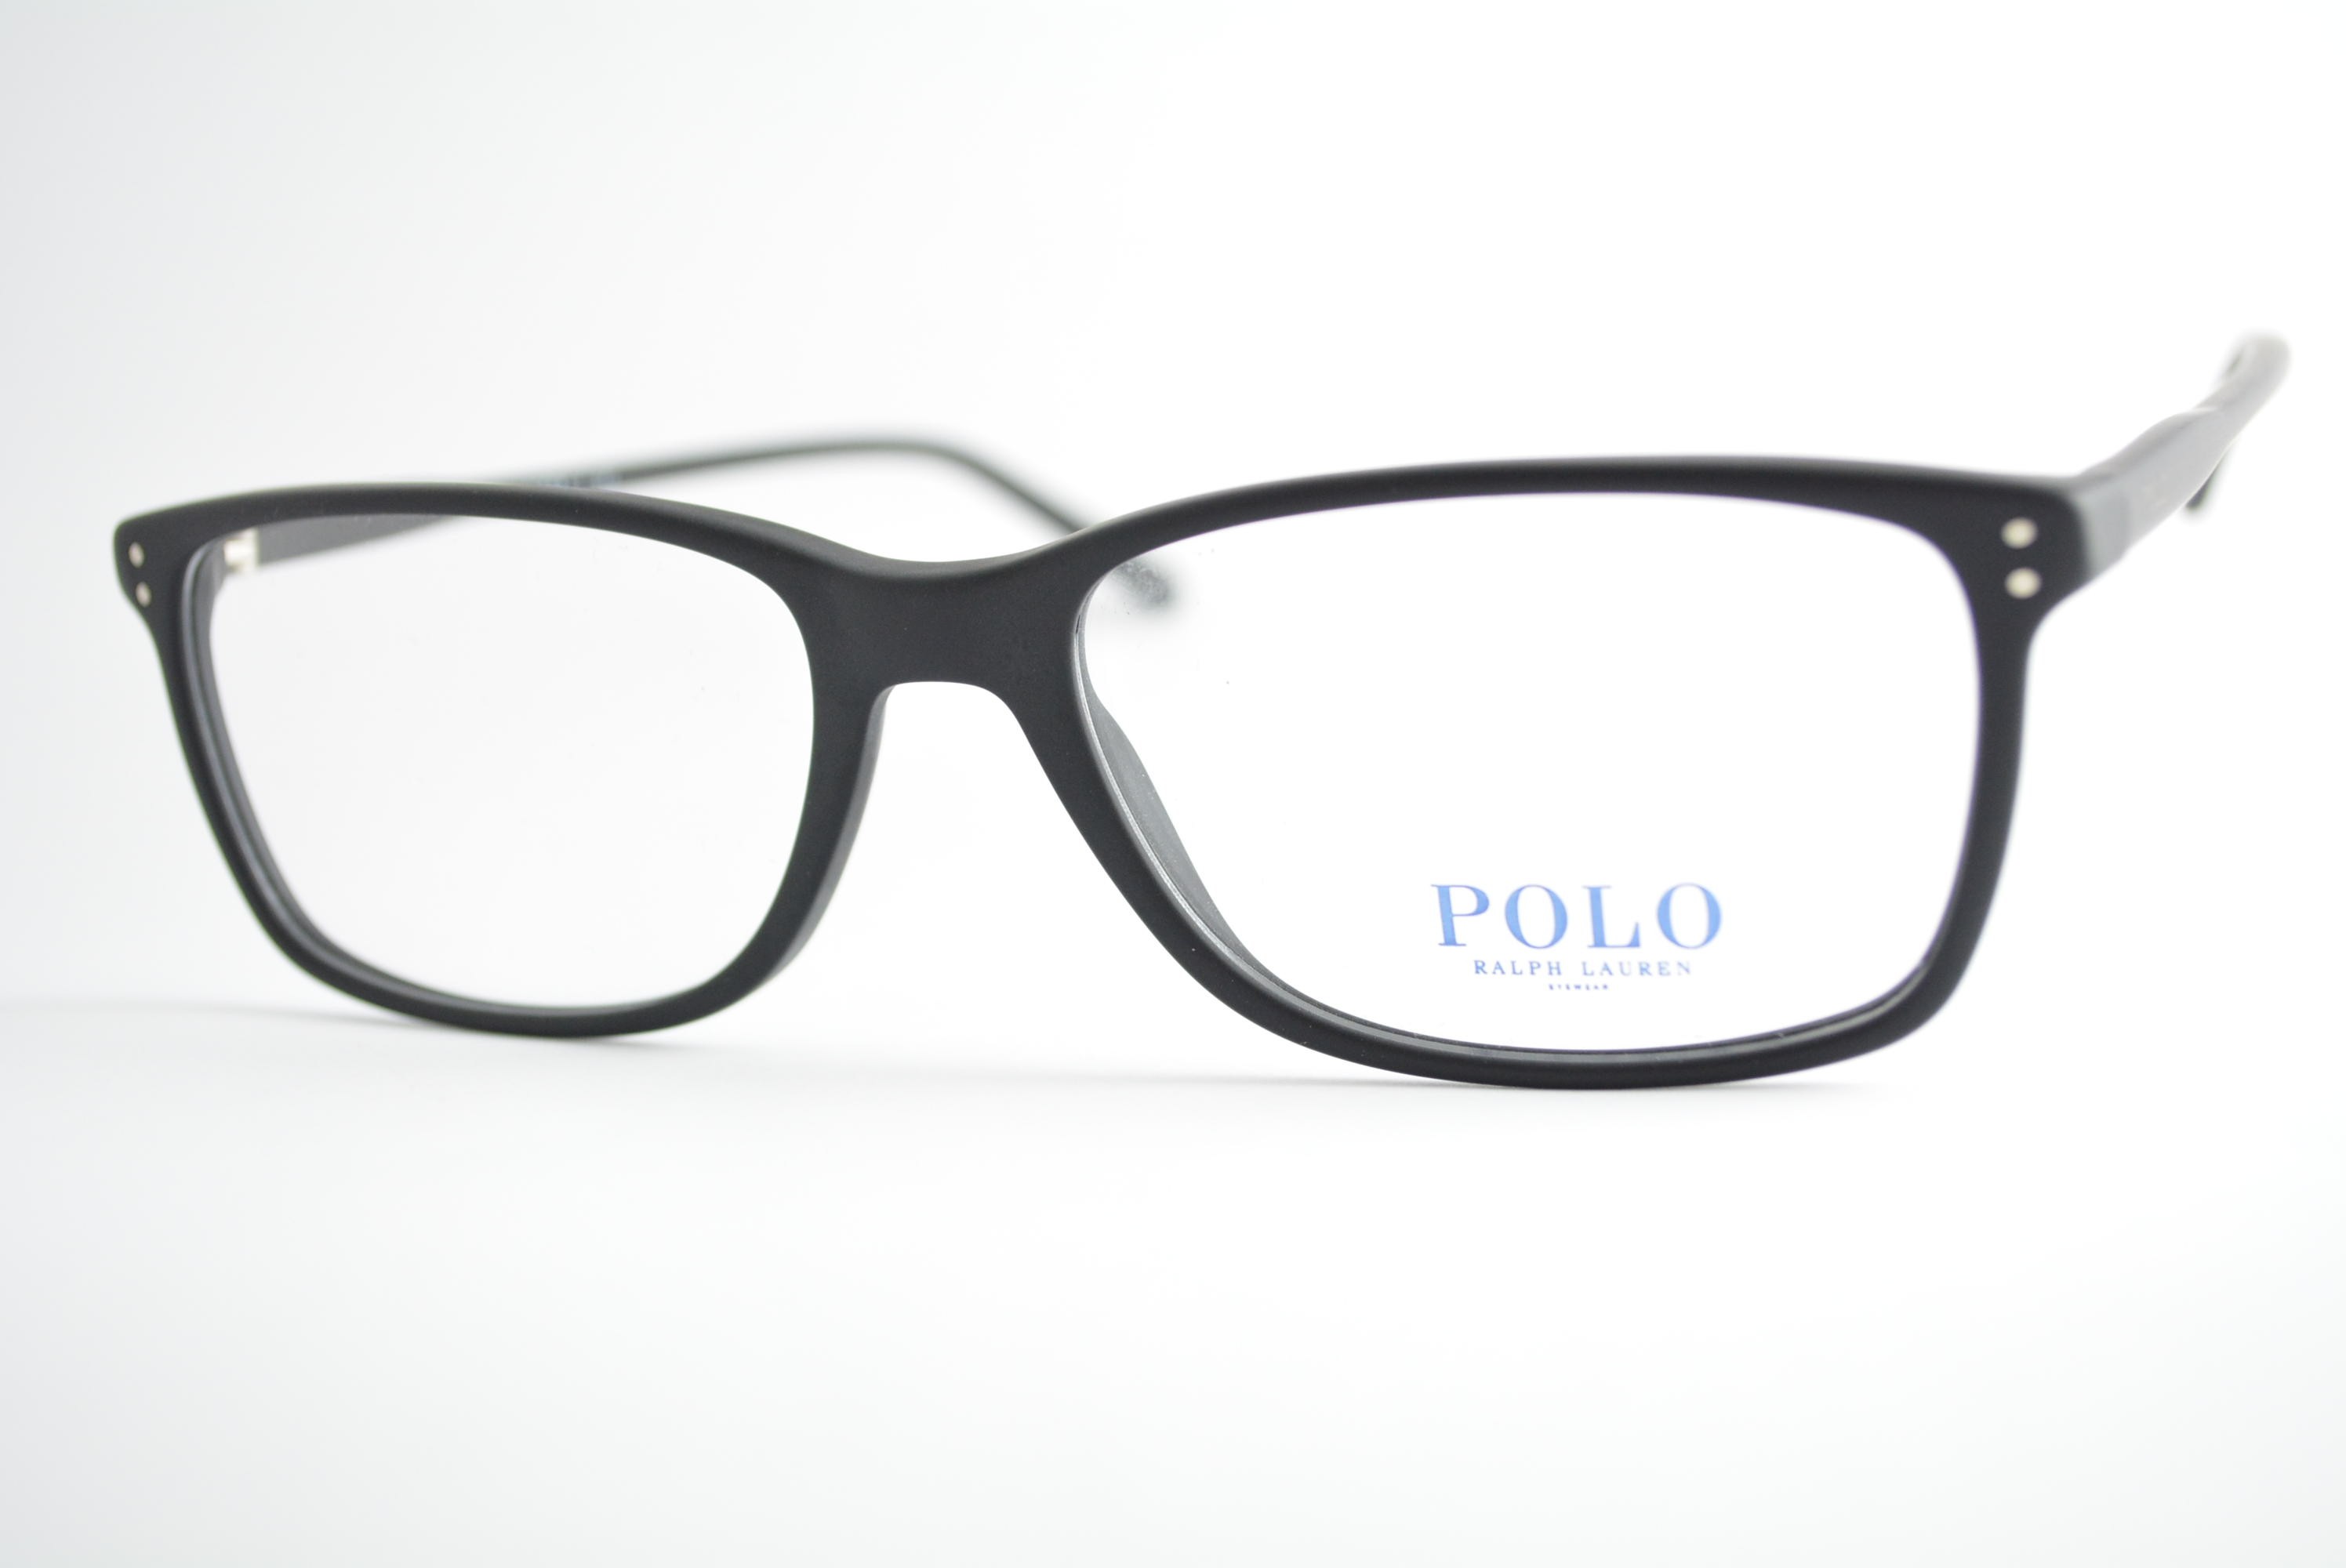 armação de óculos Polo Ralph Lauren mod ph2155 5284